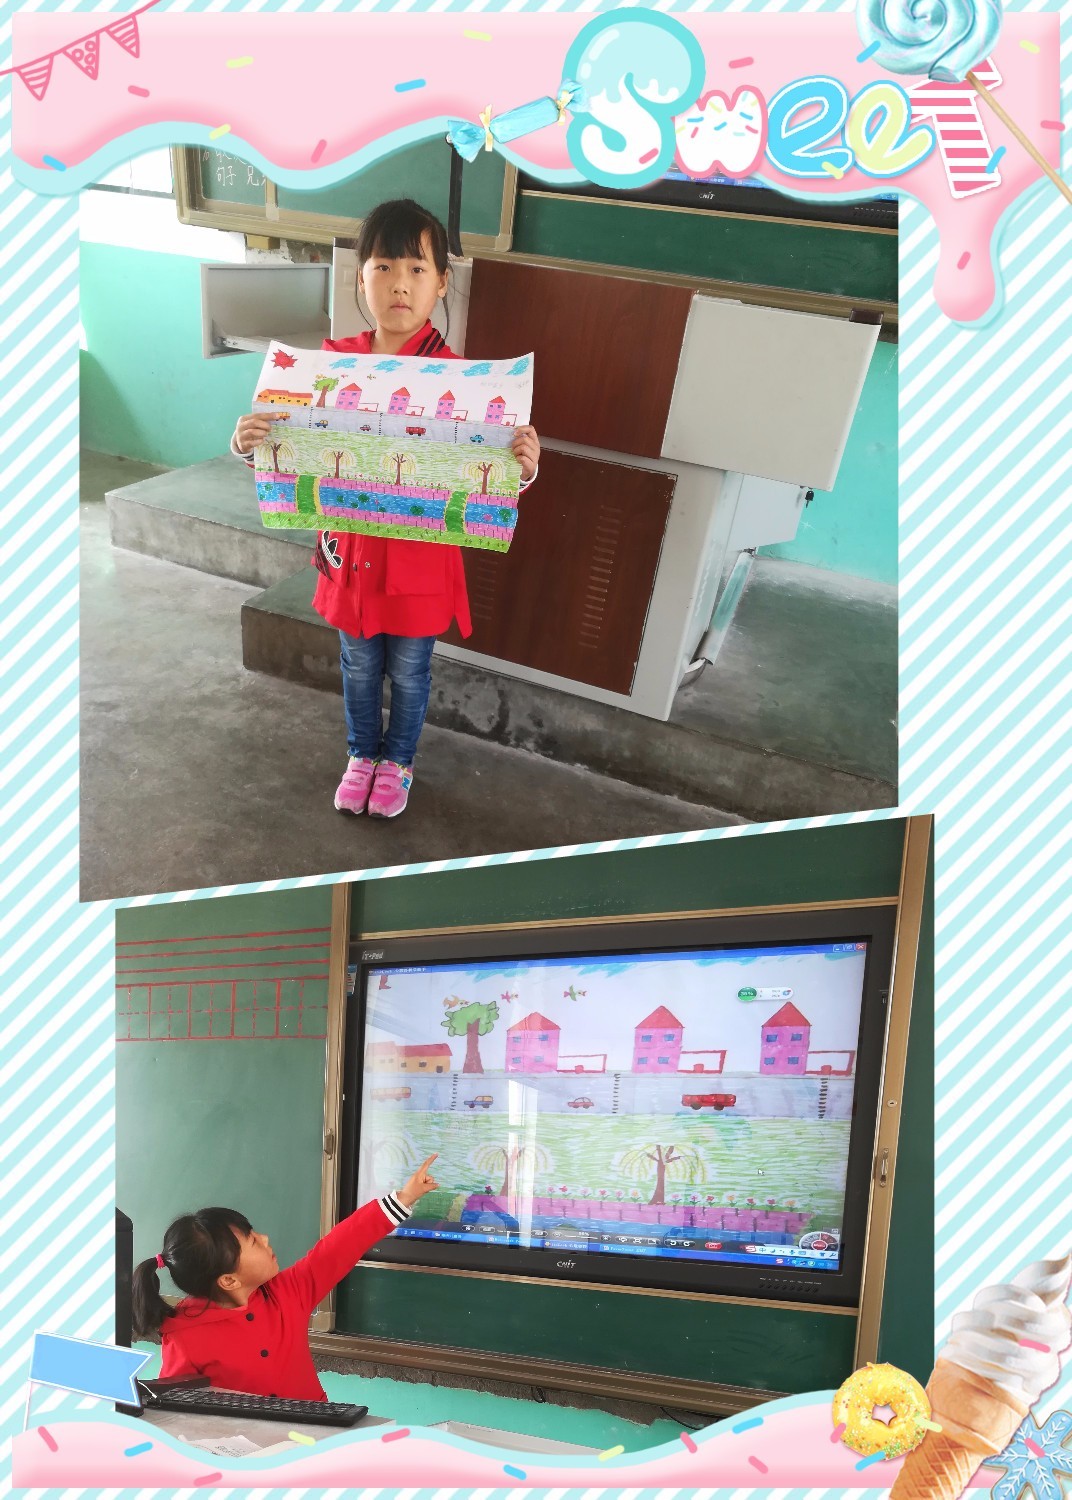 长岛县北长山乡中心小学开展了"画家乡,夸家乡"活动